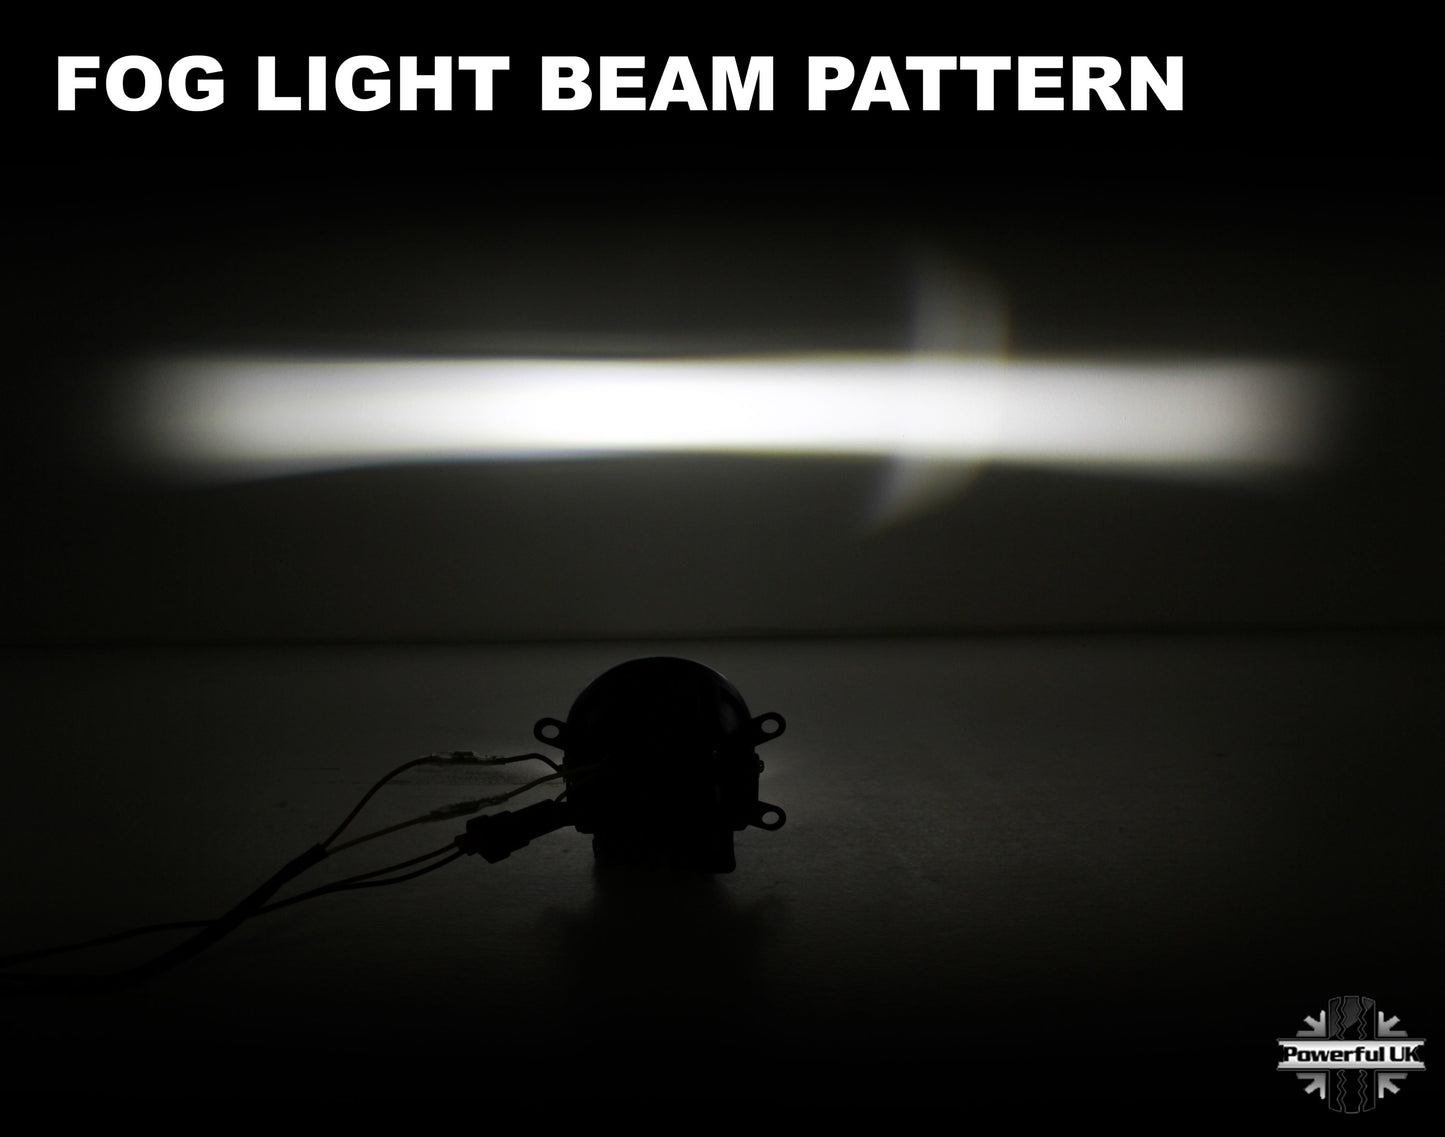 2 in 1 LED Fog/DRL lamp - Type 2 - for Nissan Navara D40